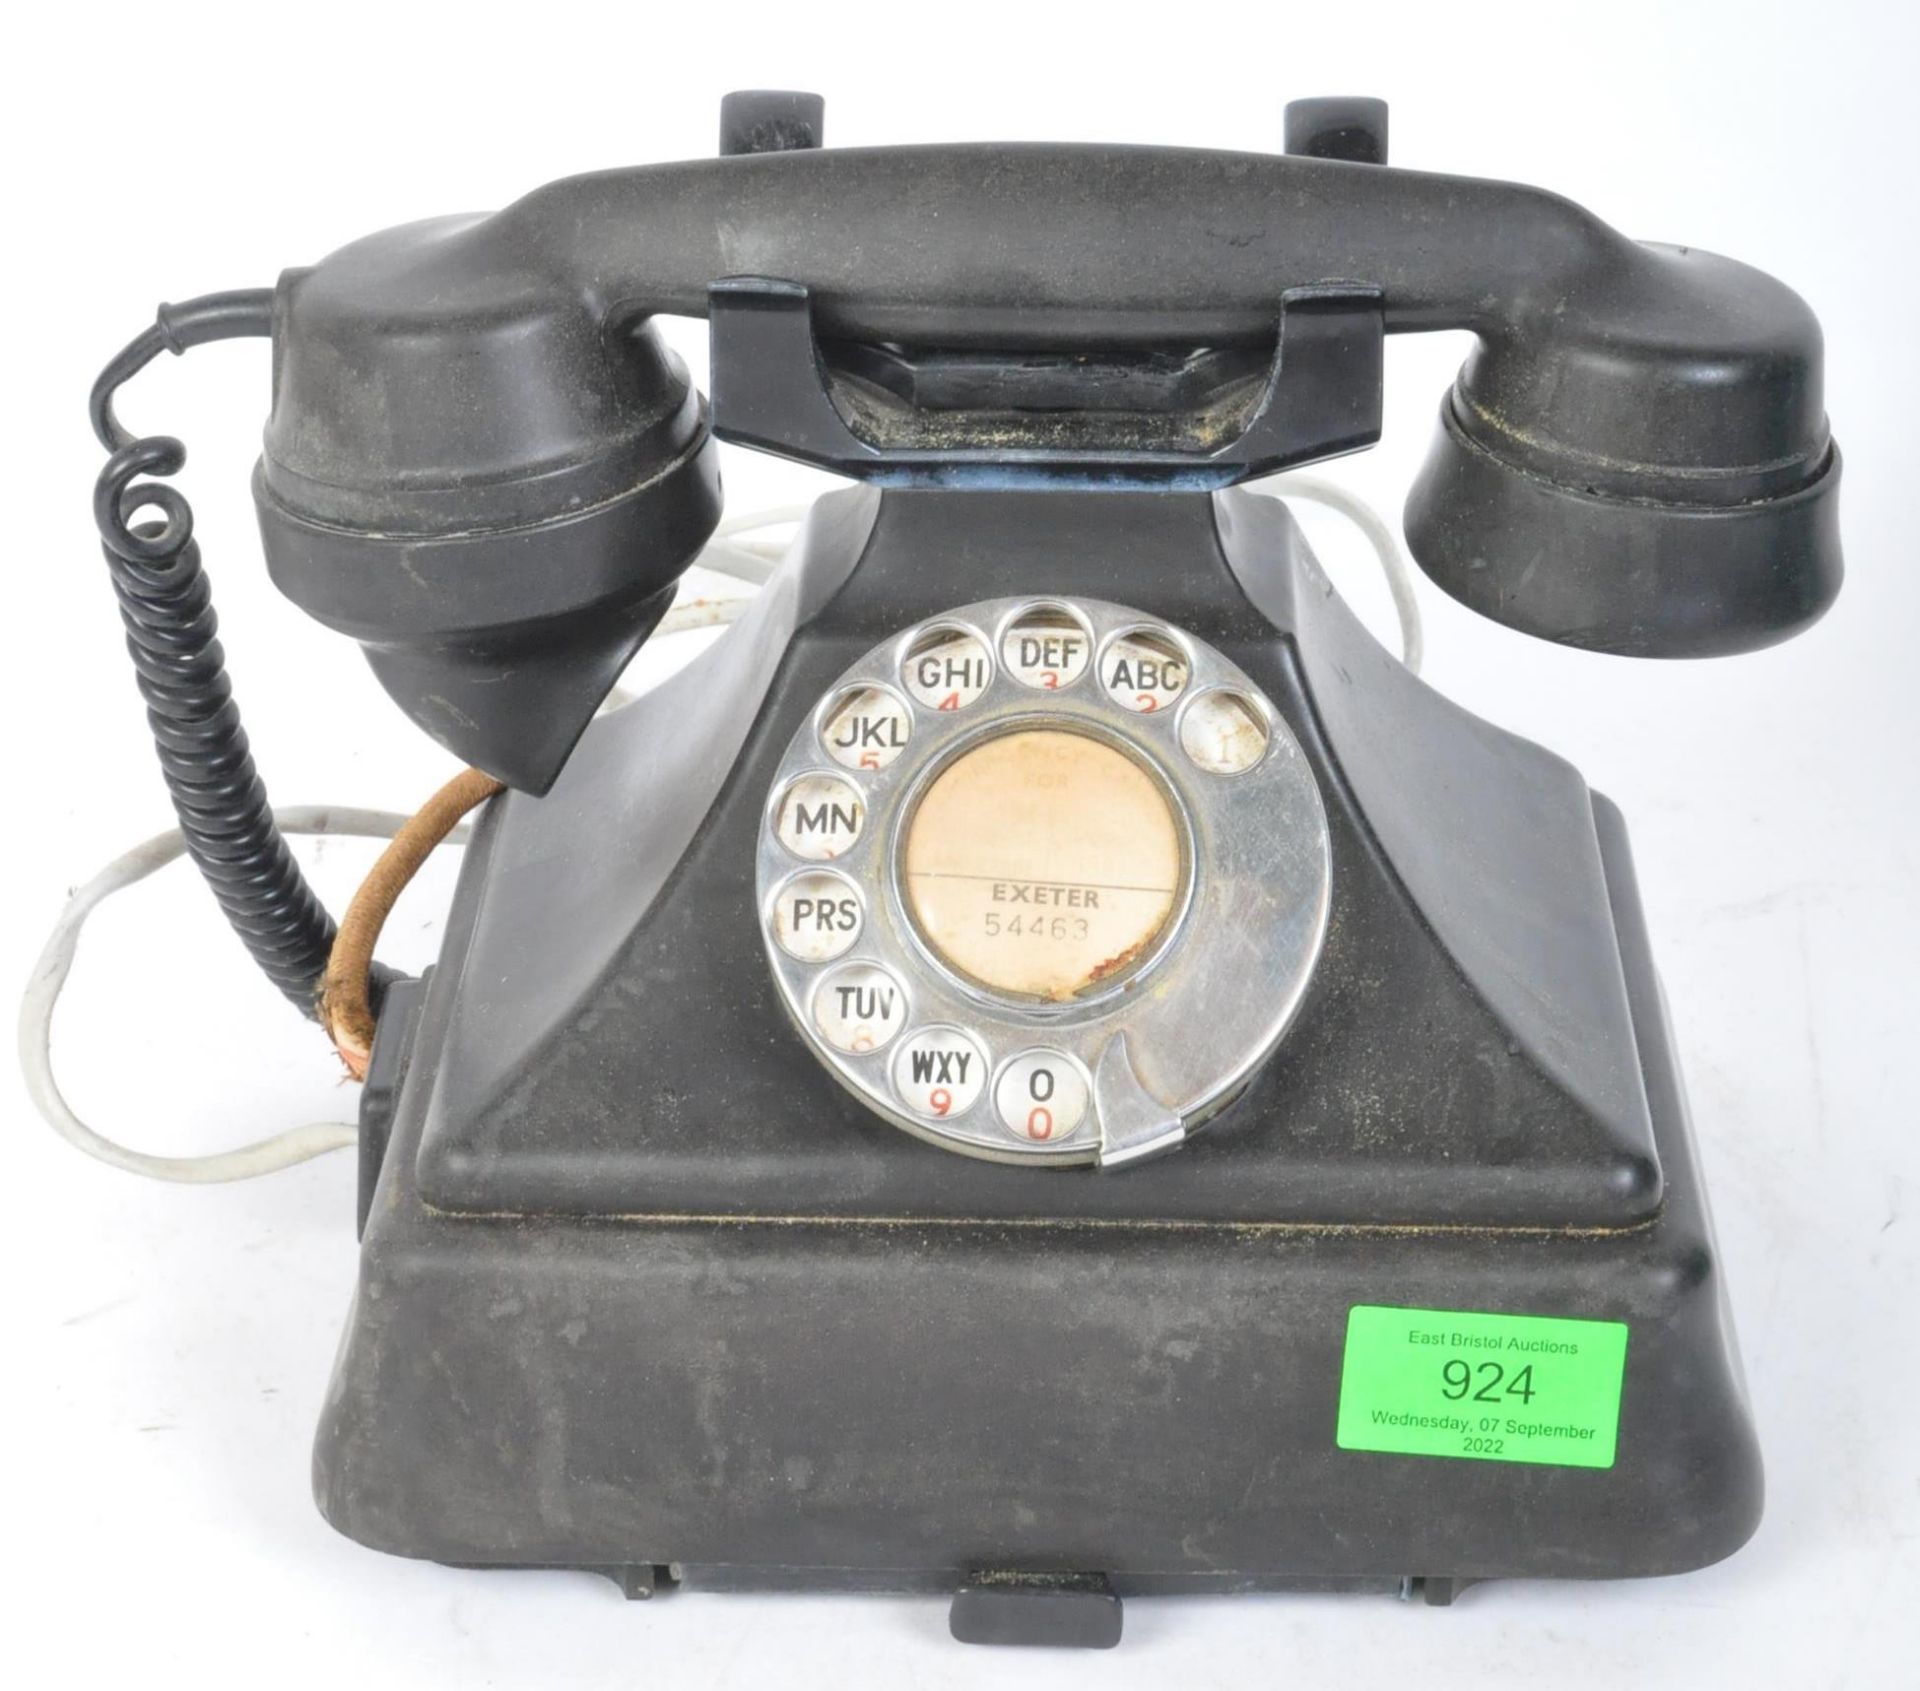 CIRCA 1940S BAKELITE BLACK TELEPHONE